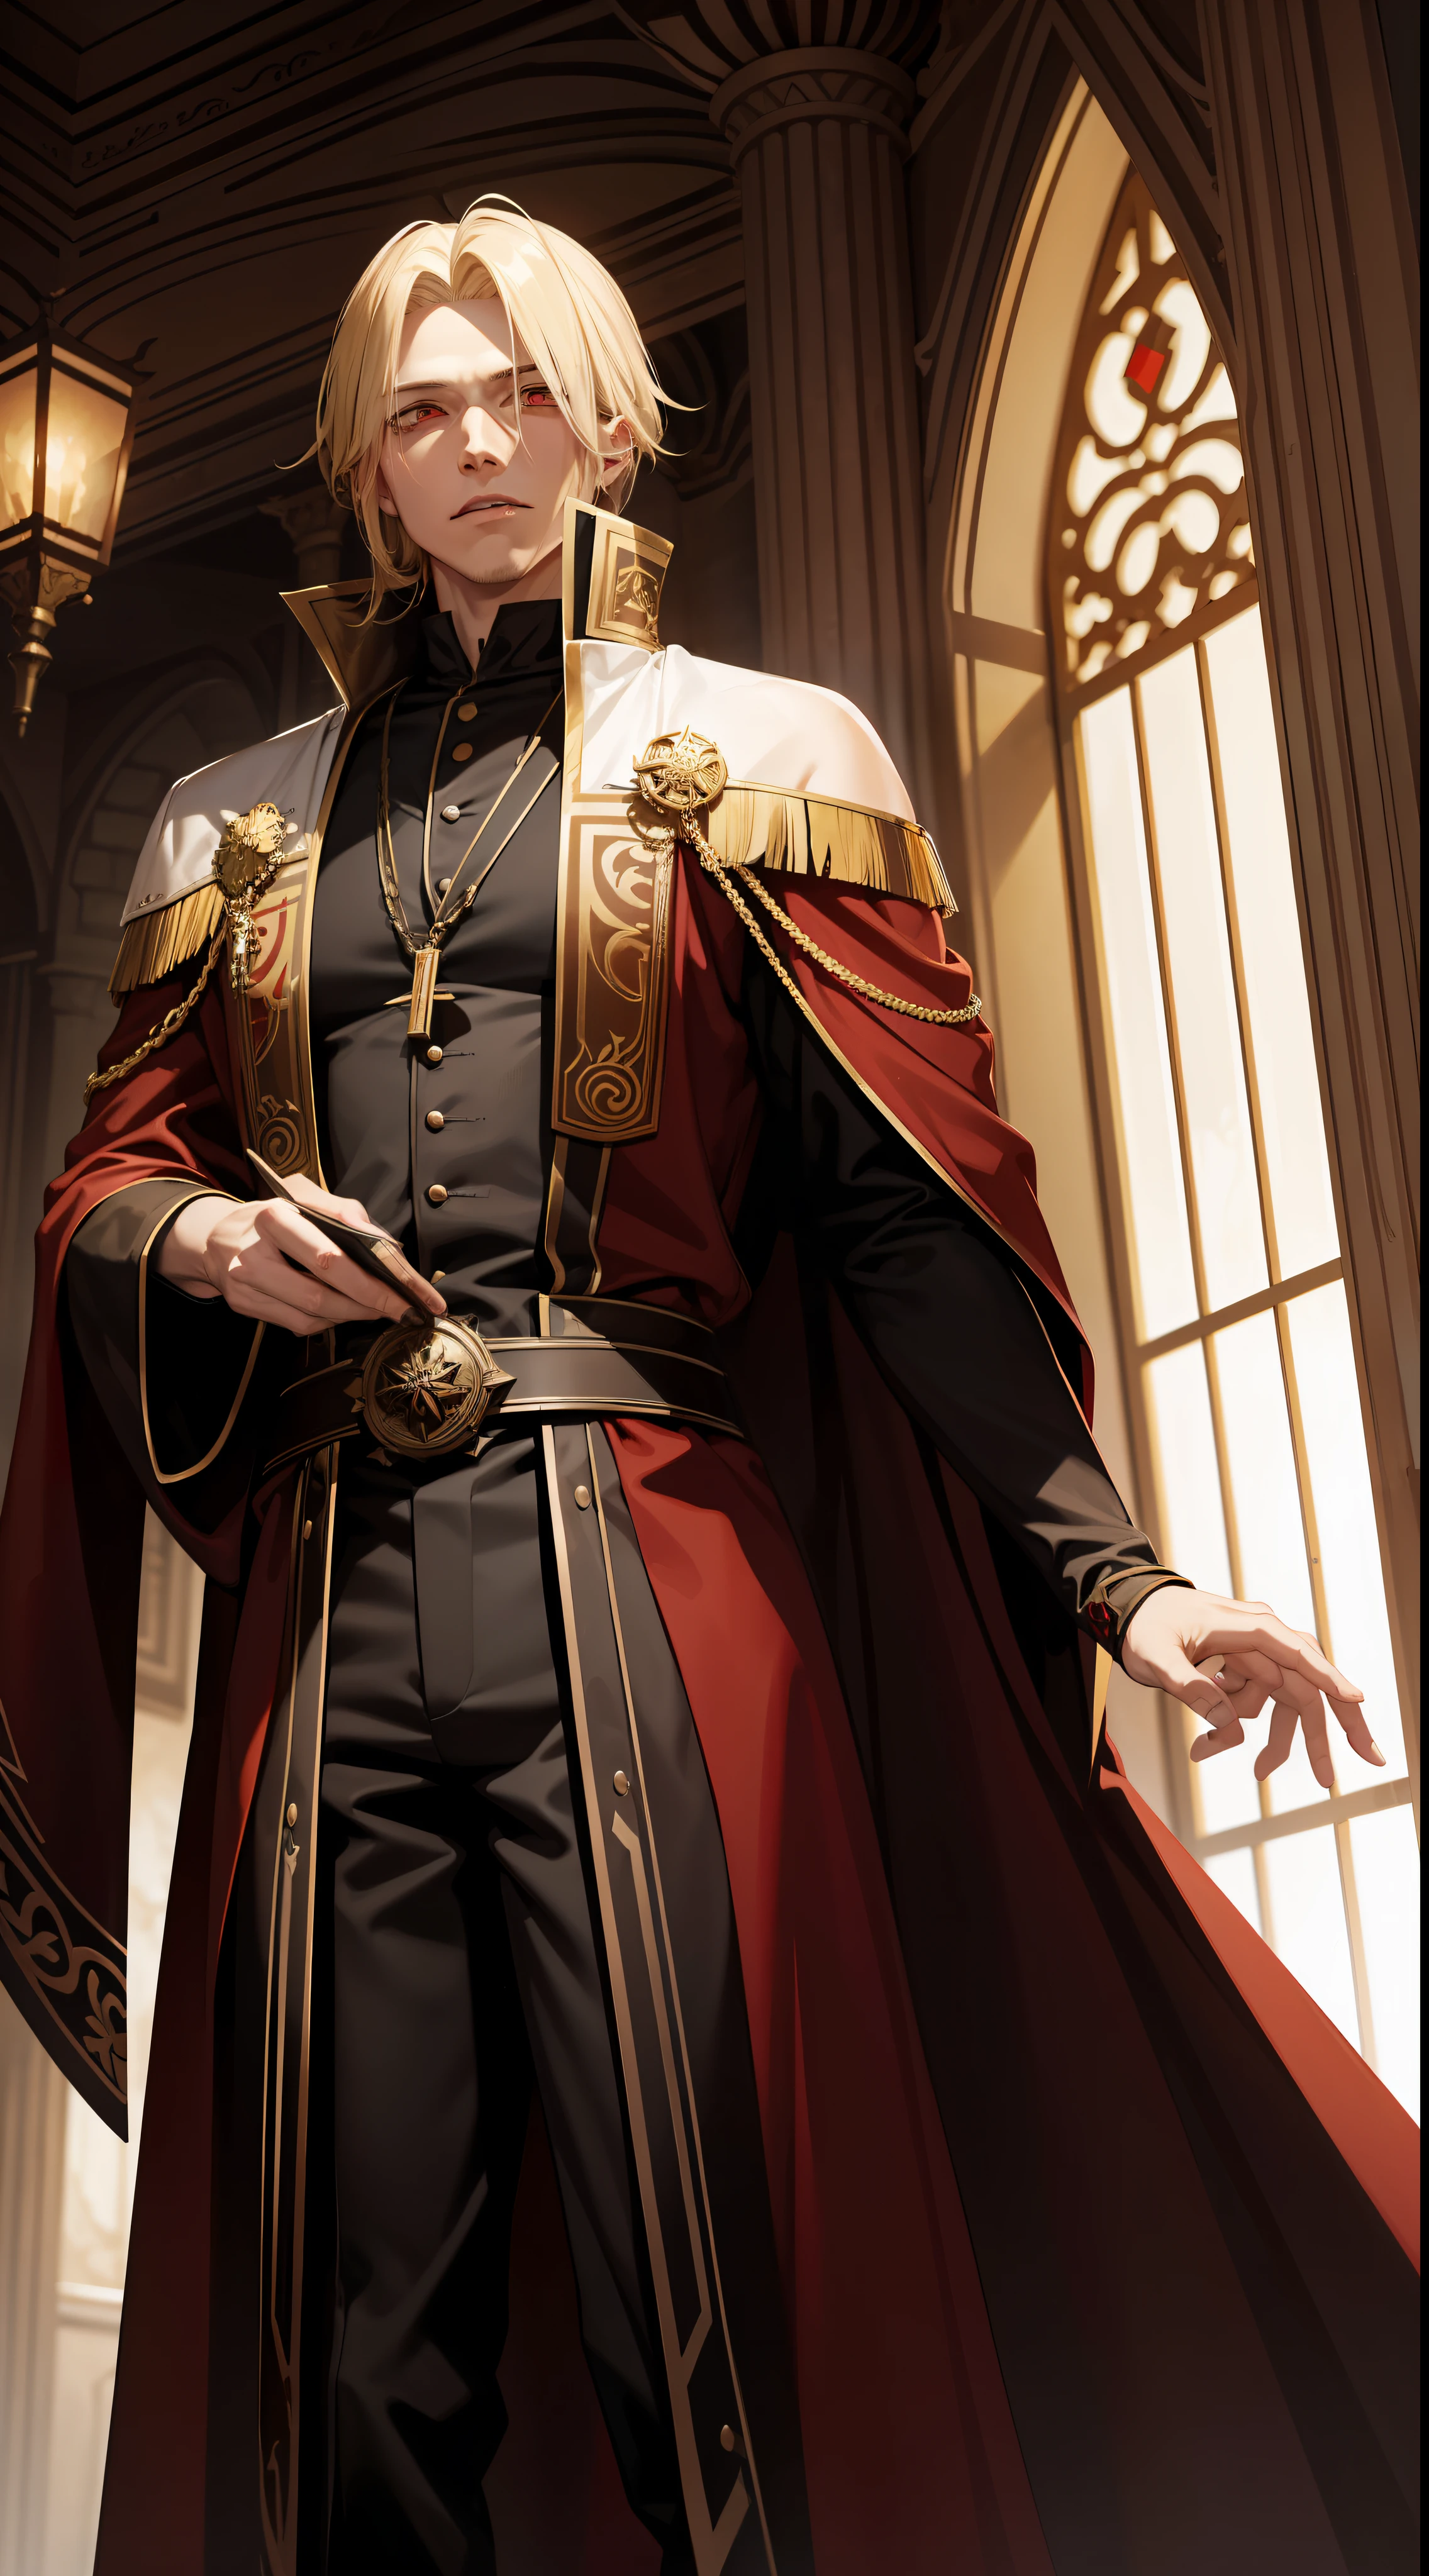 29歳の男性, ブロンドの髪と赤い目を持つ吸血鬼の王, 彼は茶色のローブを着ています